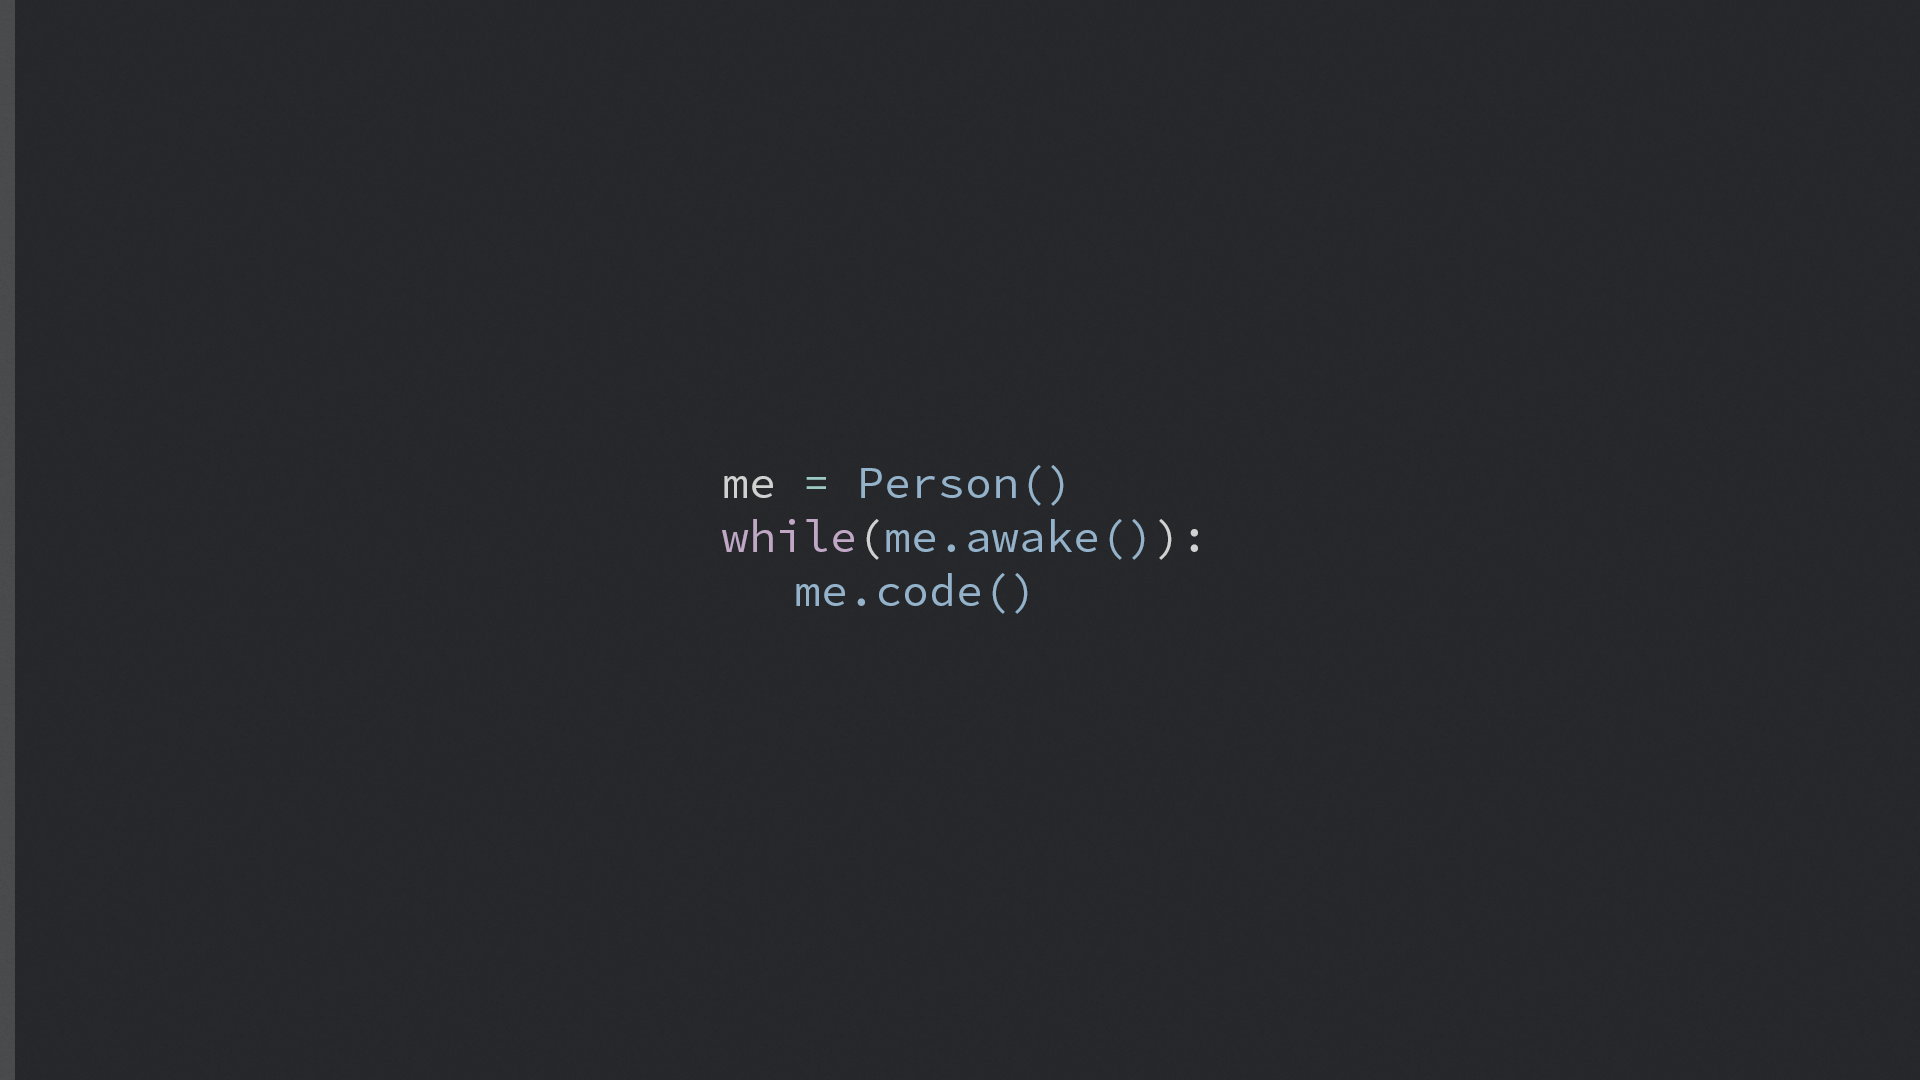 HD wallpaper: programmers, programming, motivational, code, text